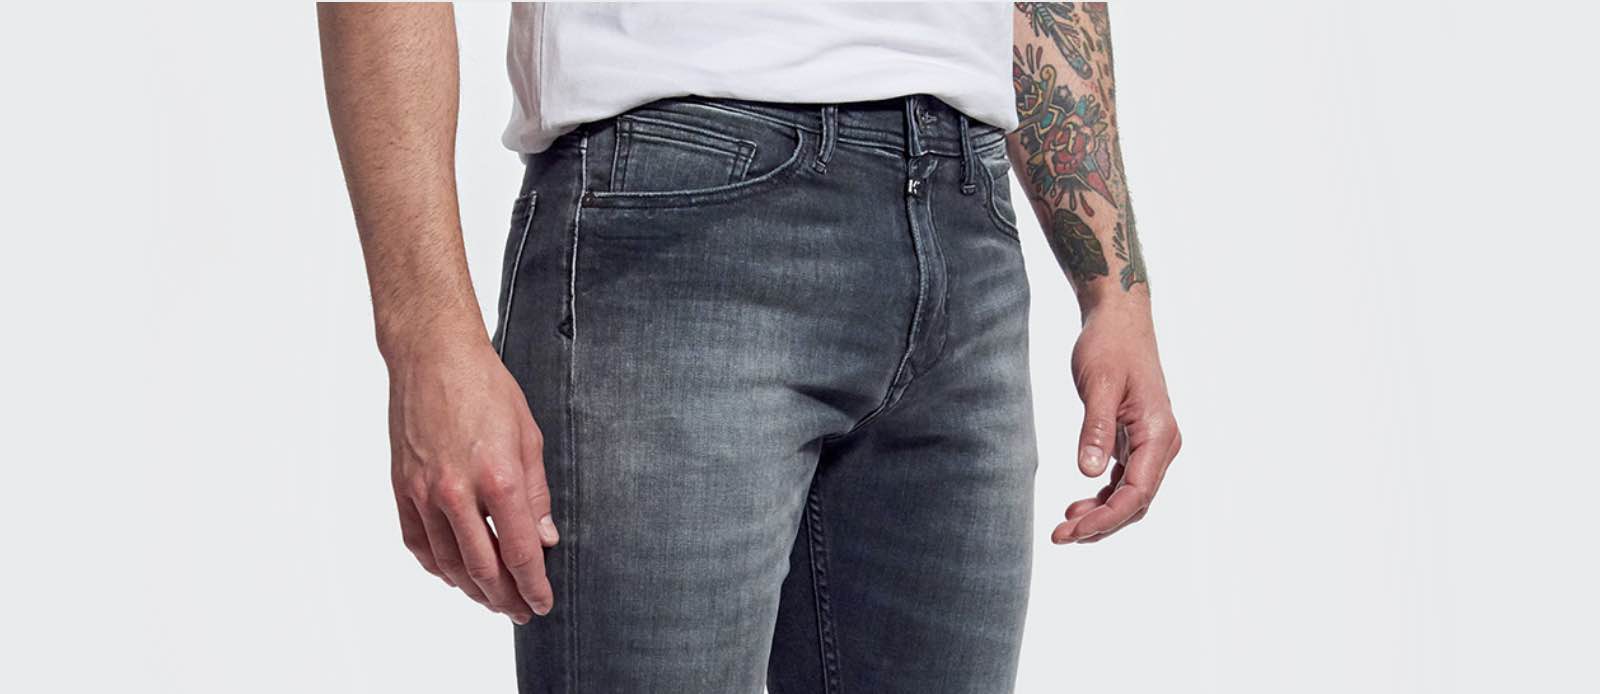 kaporal jeans price